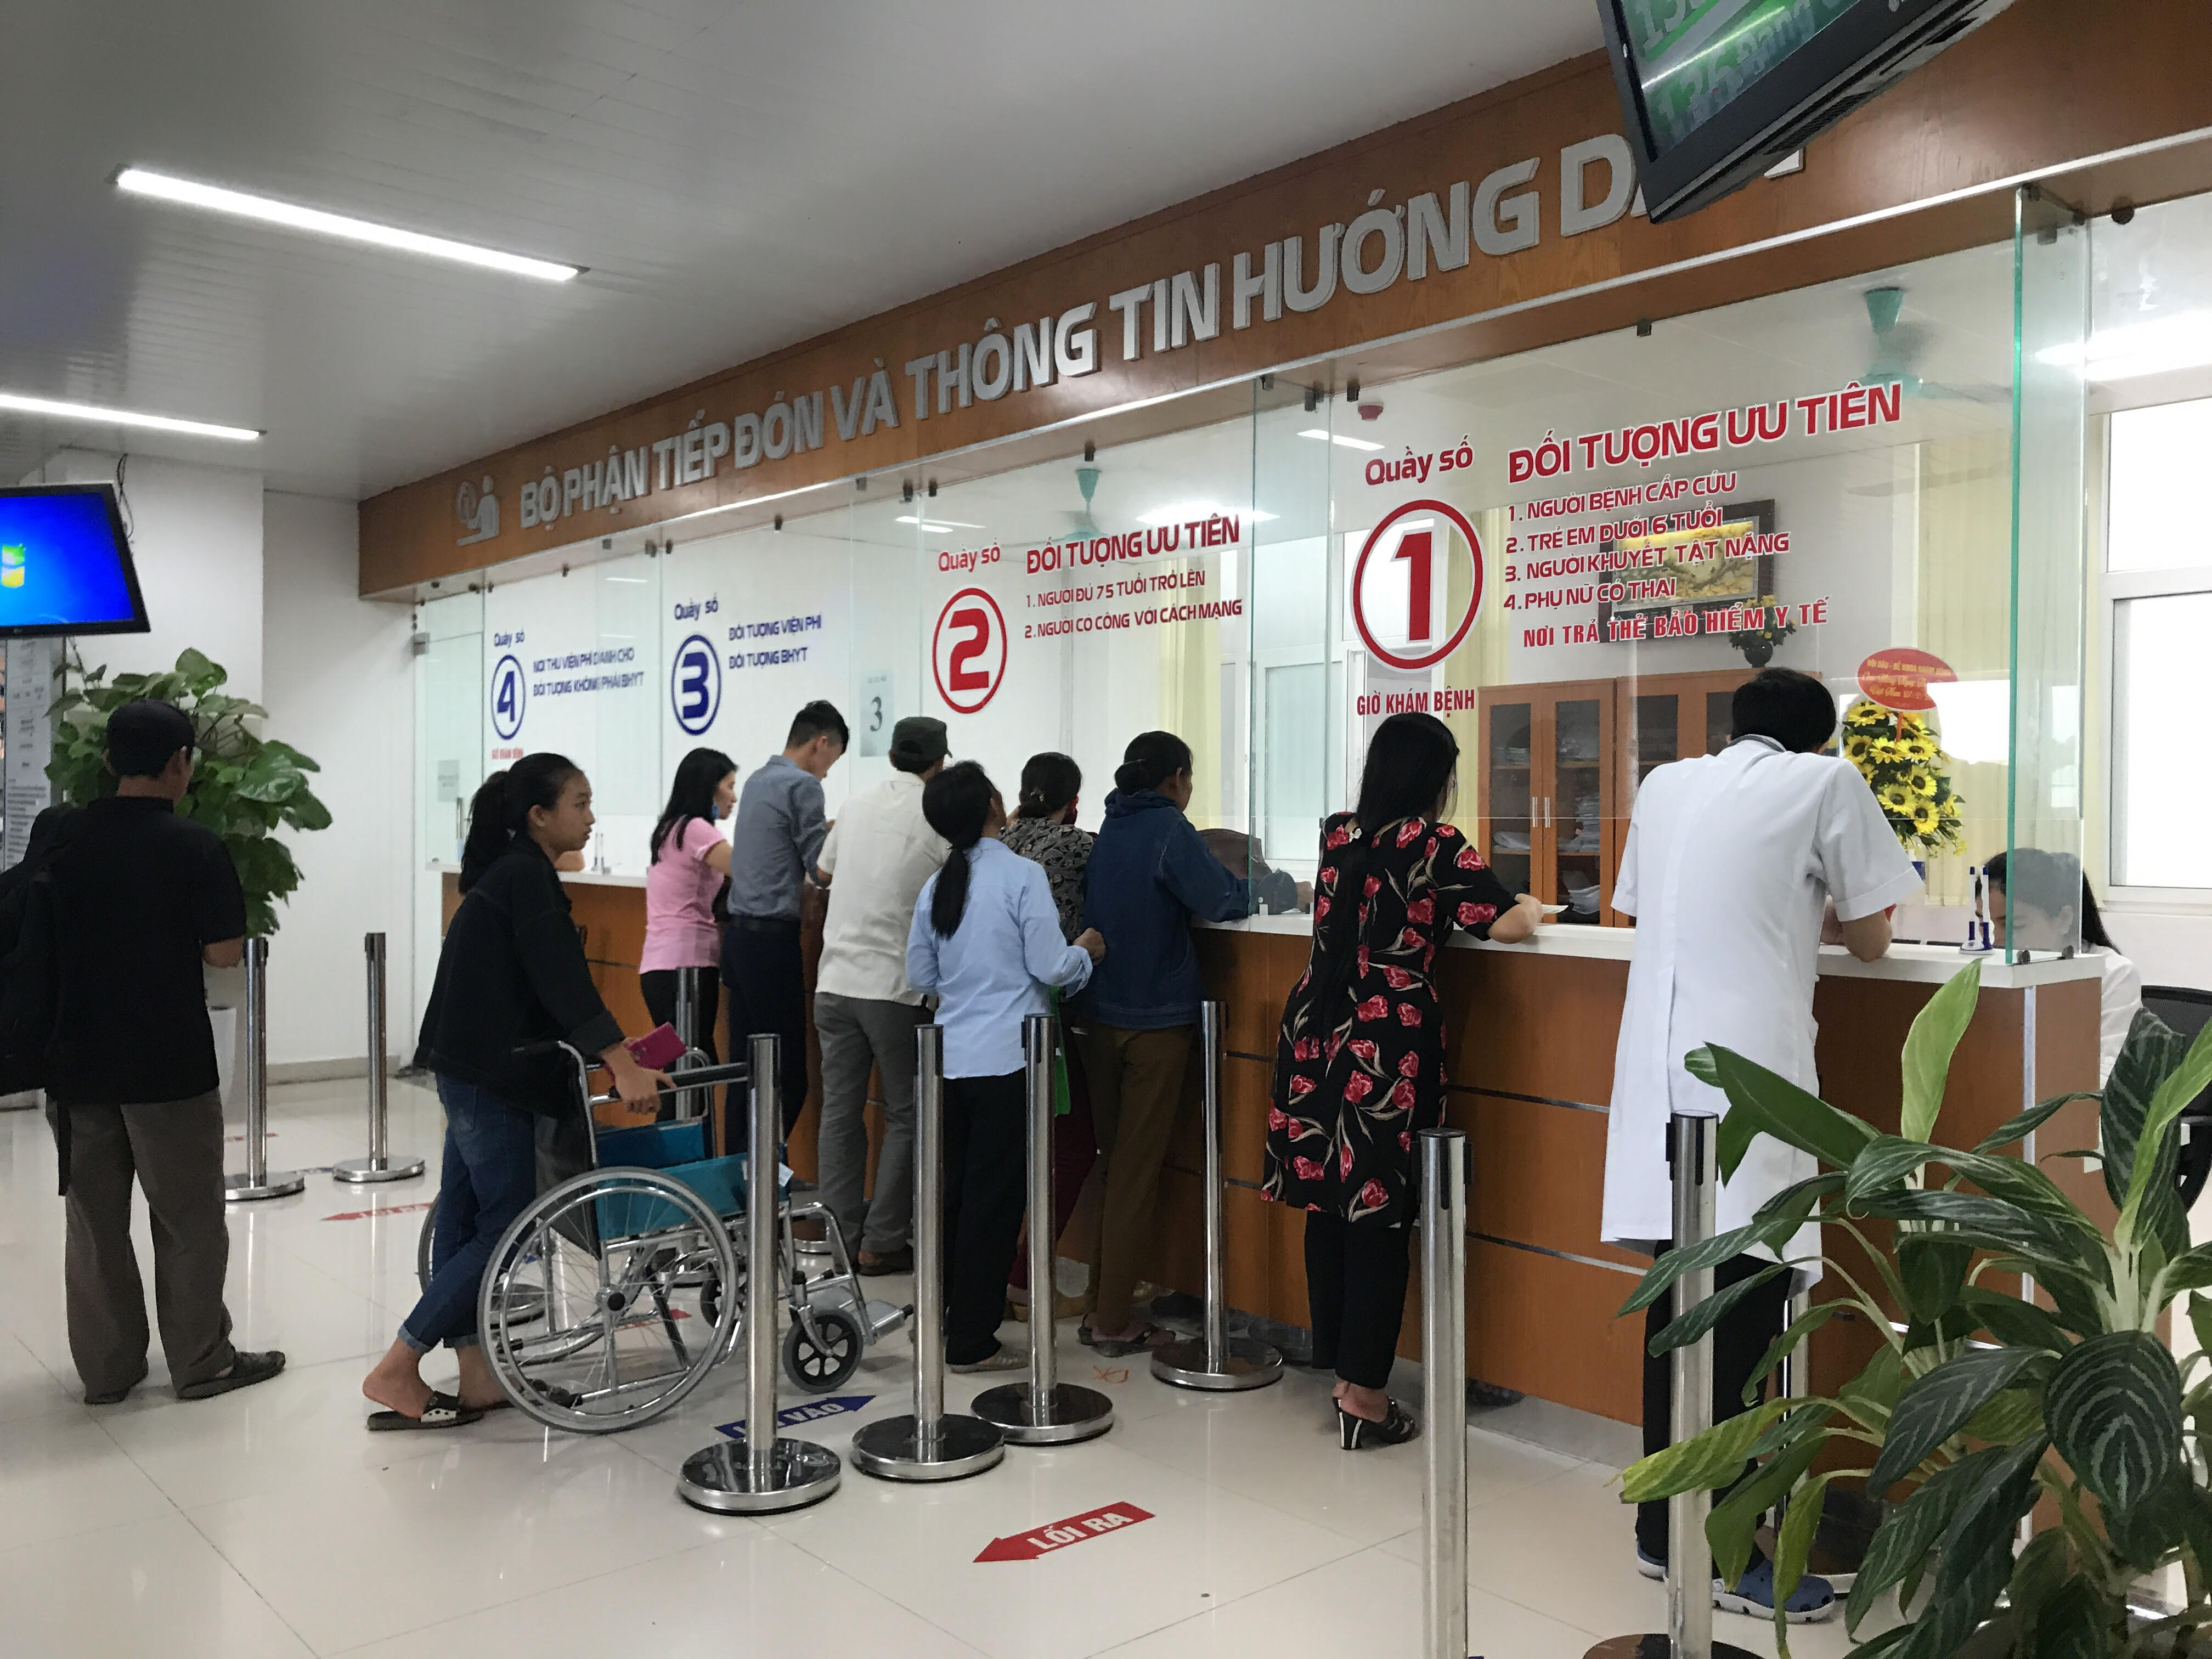 Người dân đến khám chữa bệnh tại Bệnh viện hữu nghị Việt Nam-Cu Ba Đồng Hới. 